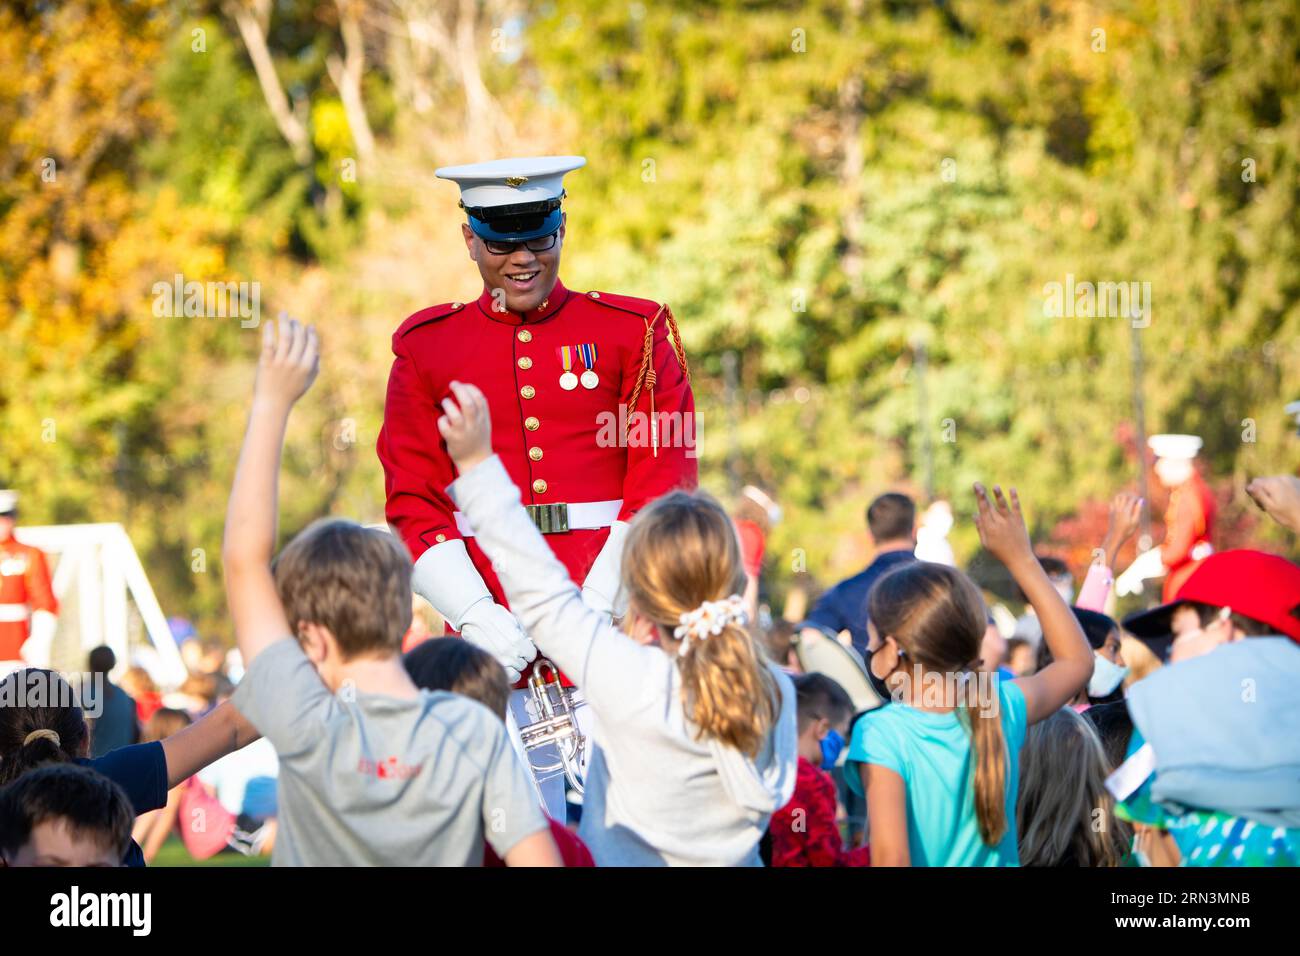 ARLINGTON VA, Vereinigte Staaten – Mitglieder des US Marine Corps Commandant's eigenen Trommeln- und Trommelkorps treten für begeisterte Schüler an einer Grundschule in Arlington auf. Bekannt für ihre Präzision und musikalische Exzellenz, führt der Commandant's Own oft Community Outreach durch, indem er junge Köpfe durch Musik in die Traditionen und Disziplin des Marine Corps einführt. Stockfoto